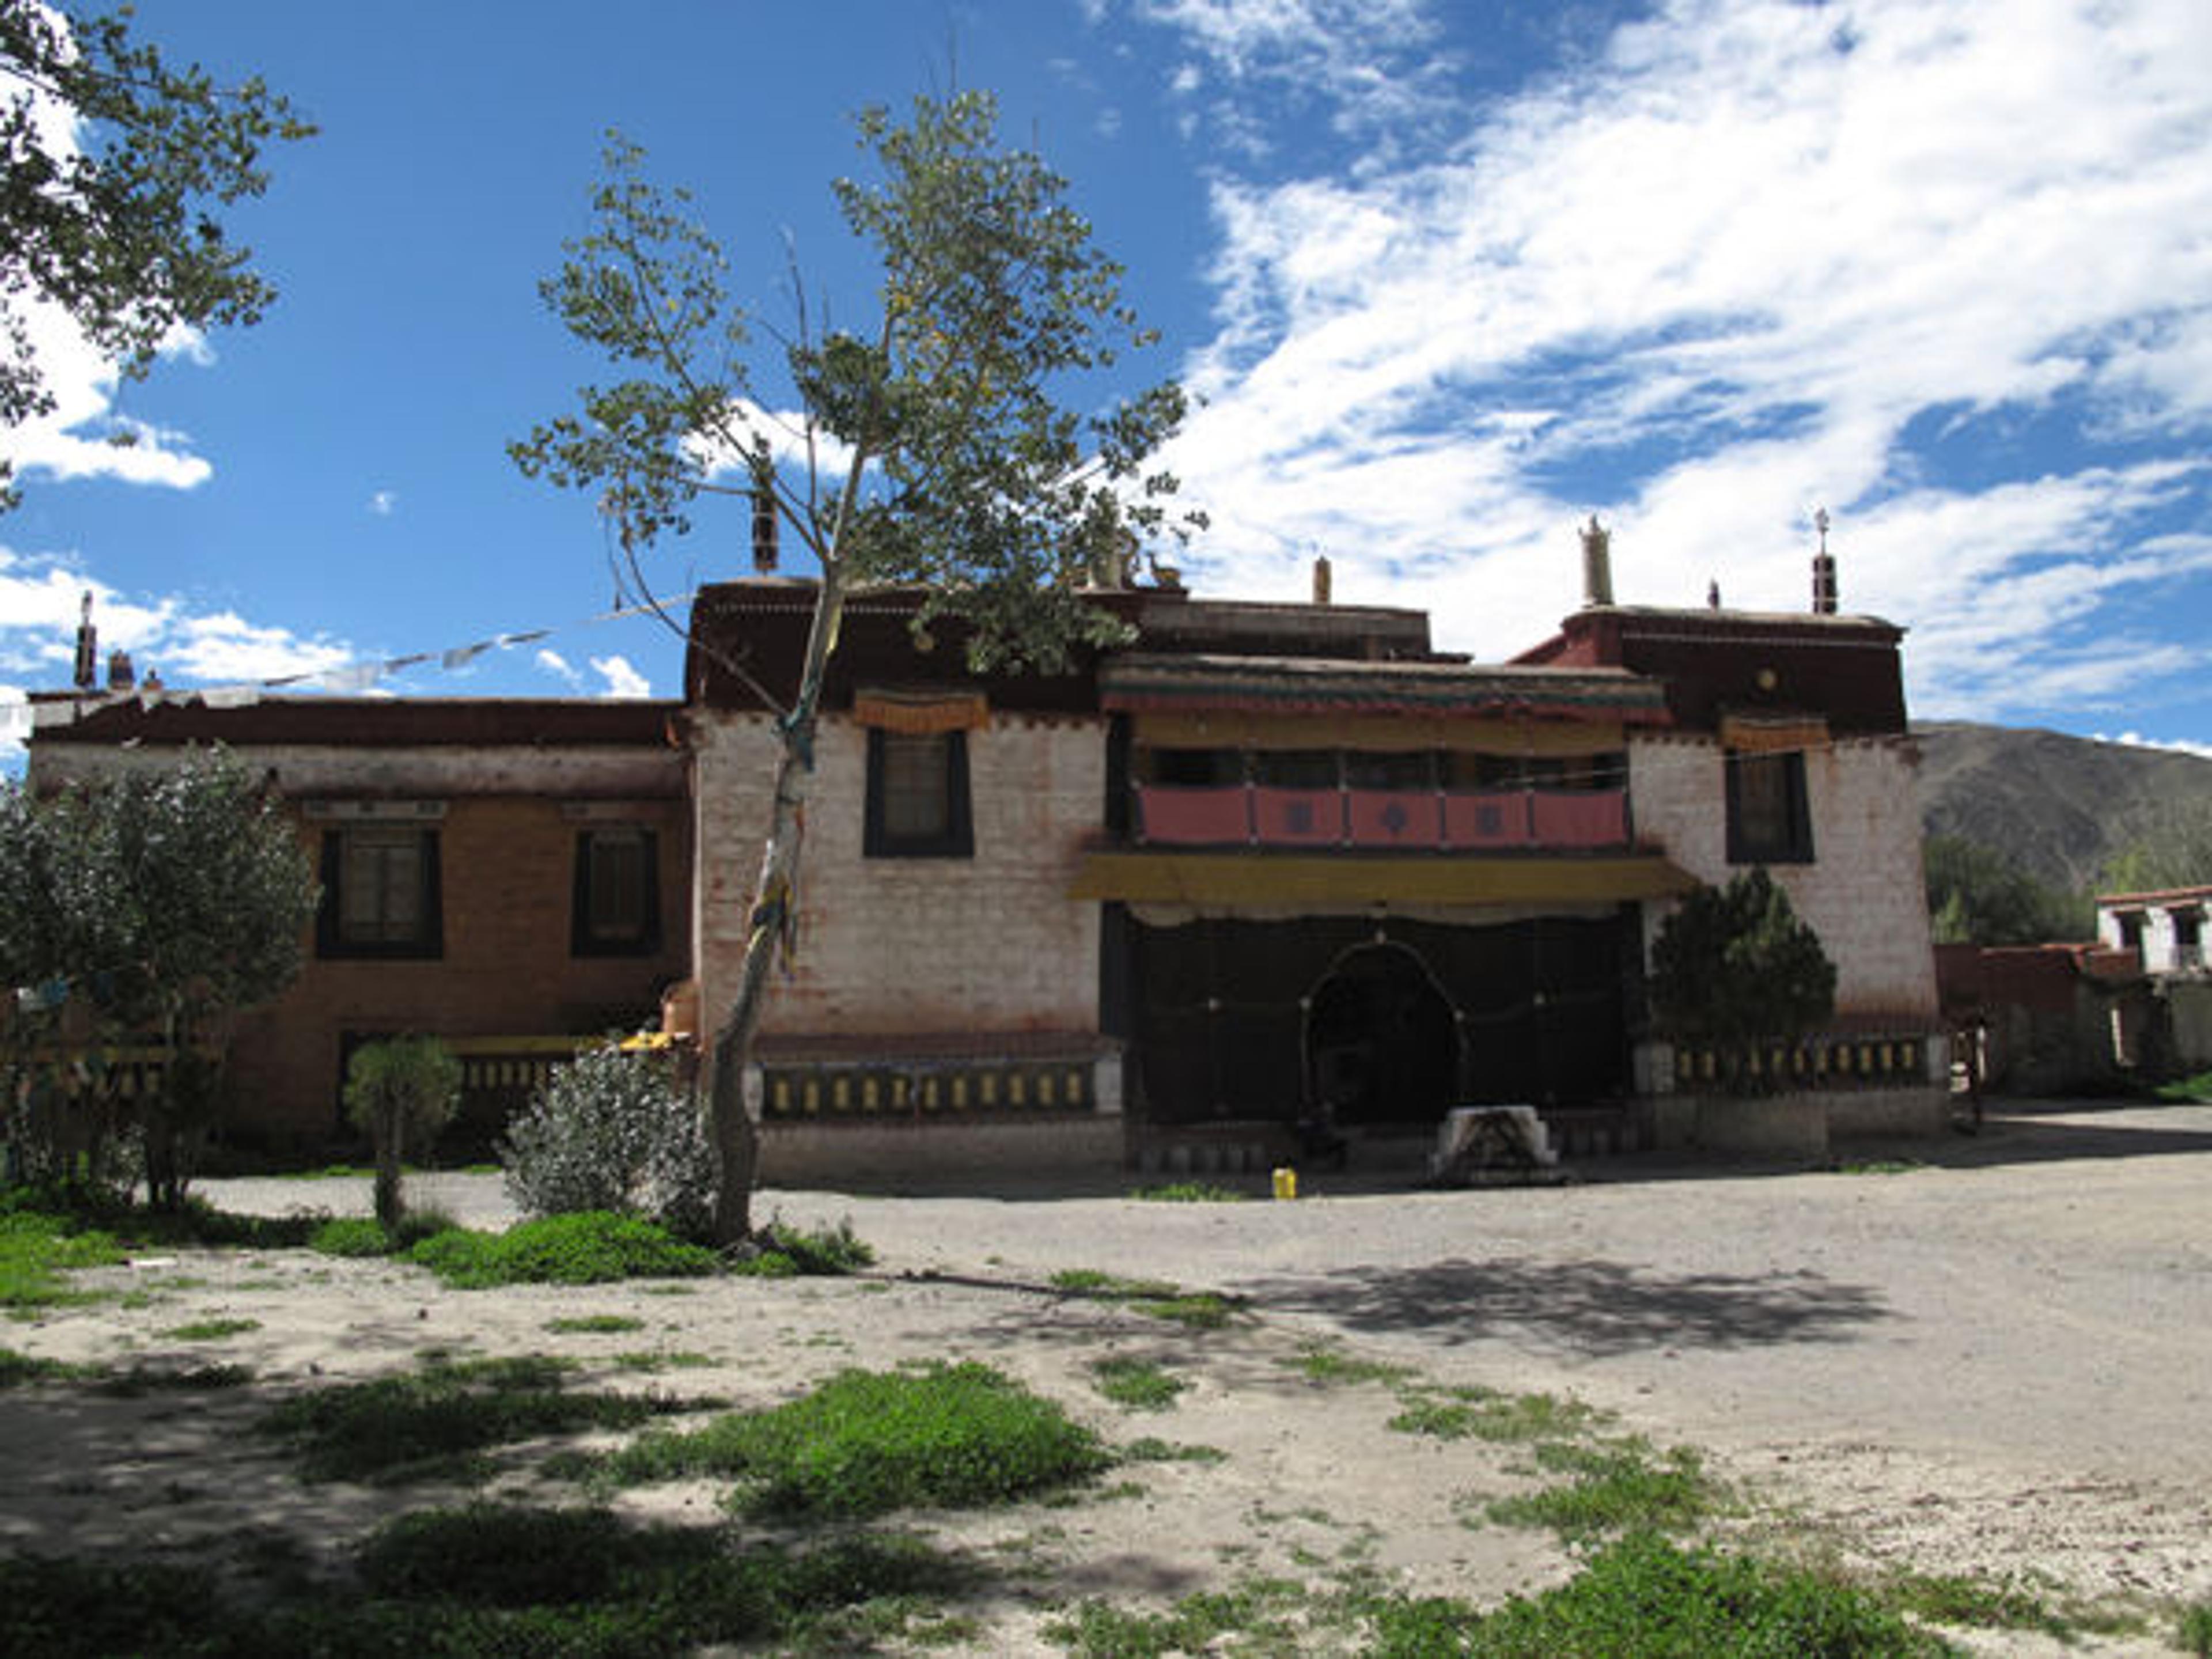 Drathang Monastery